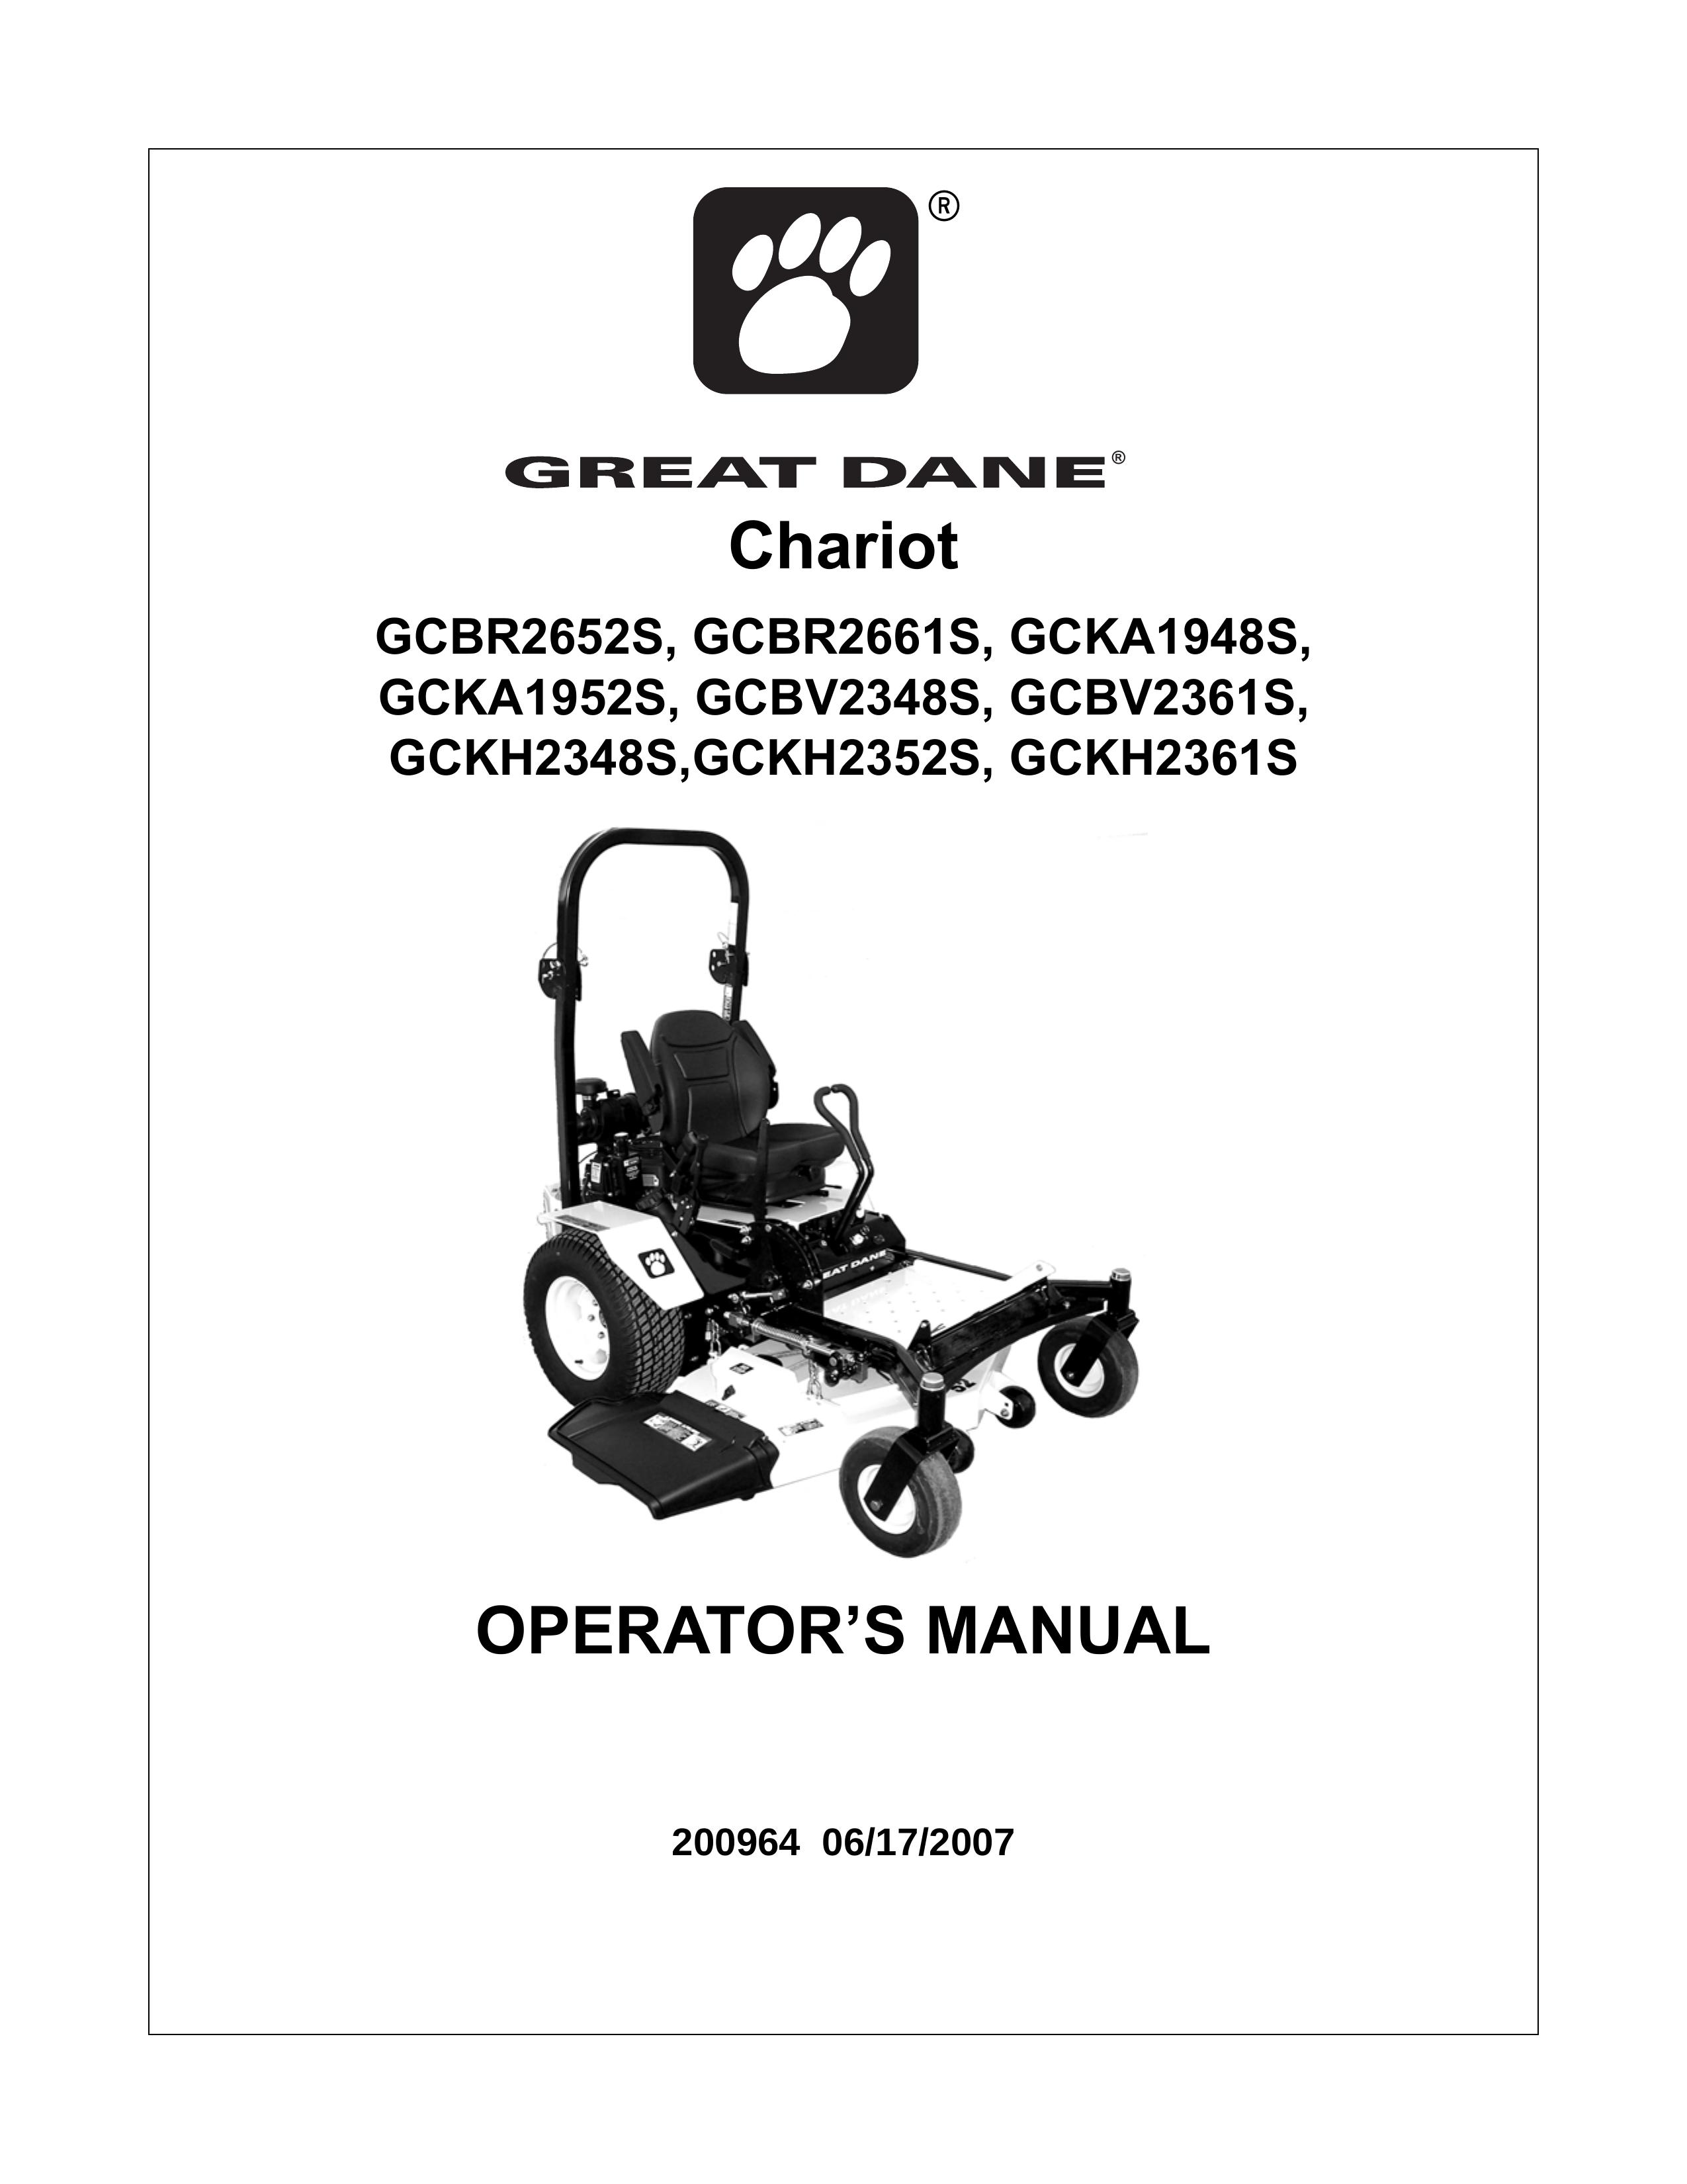 Great Dane GCKA1948S Lawn Mower User Manual